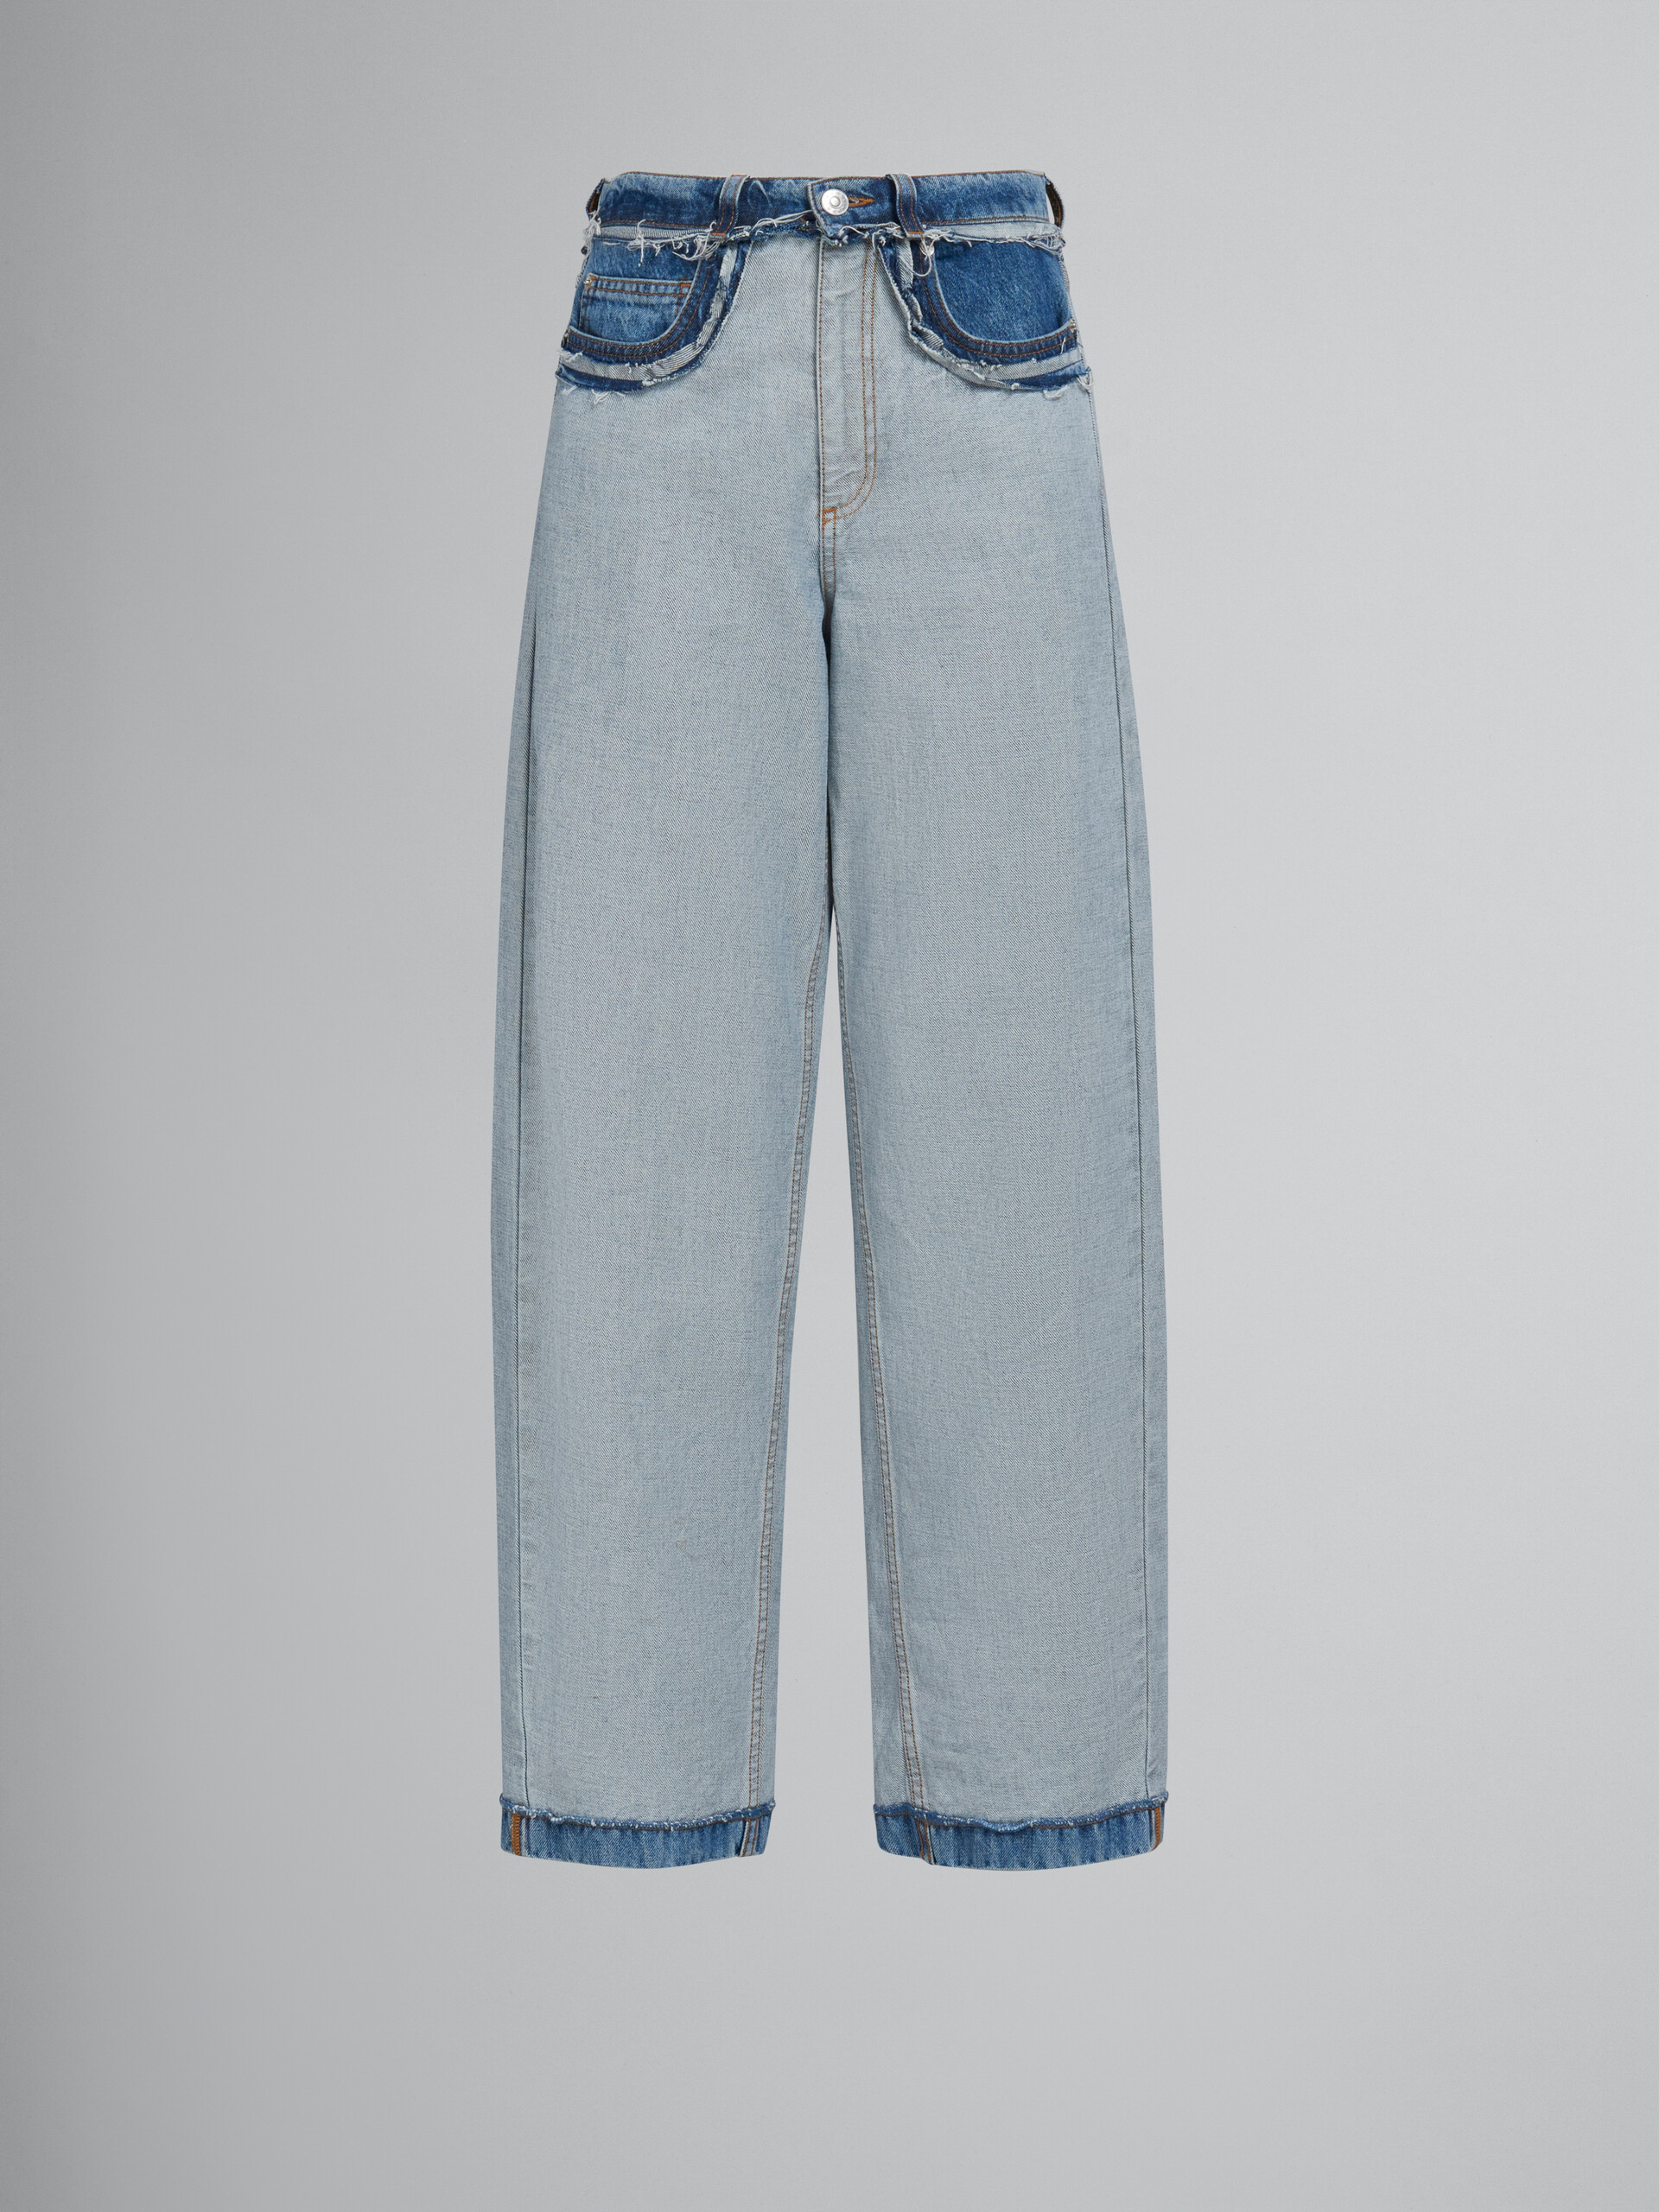 Jeans carrot in denim blu con cuciture interne a vista - Pantaloni - Image 1